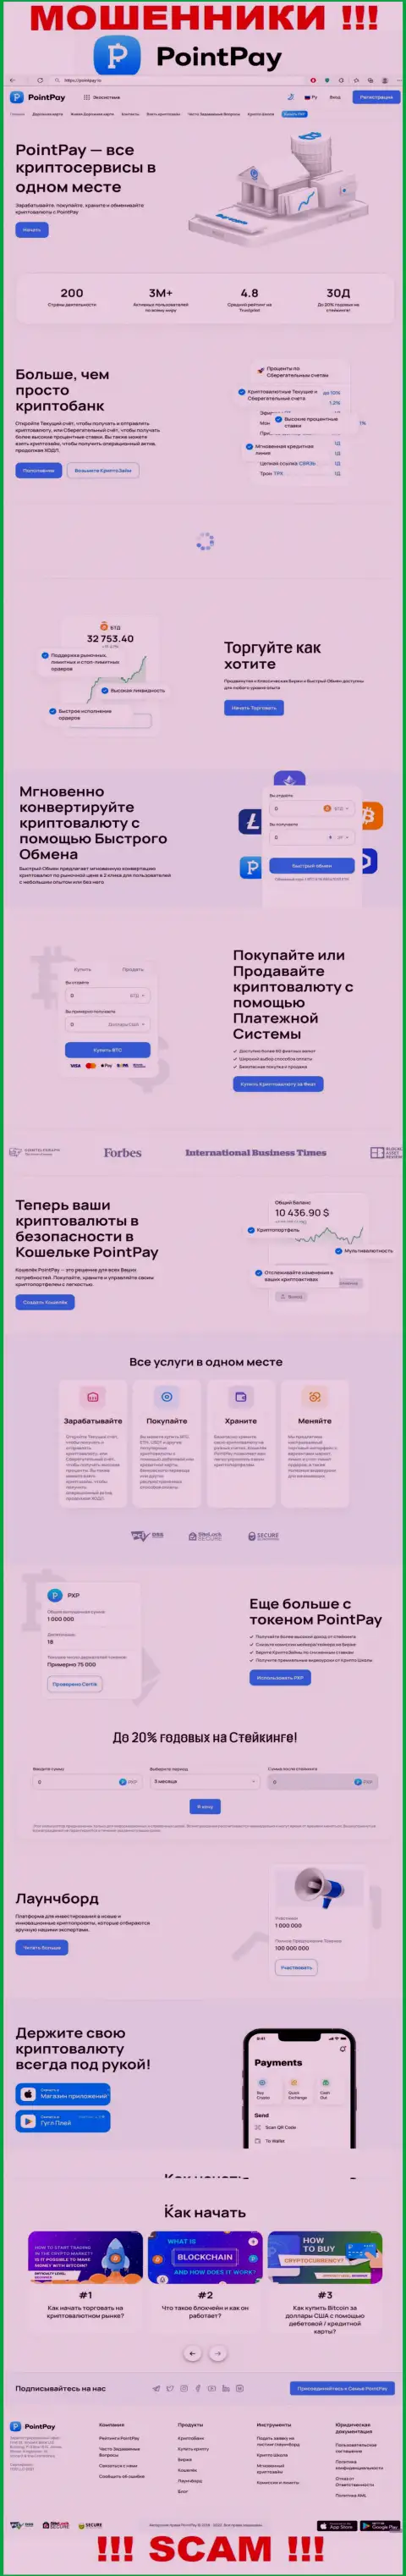 Скриншот официального интернет-ресурса PointPay Io, забитого фейковыми обещаниями